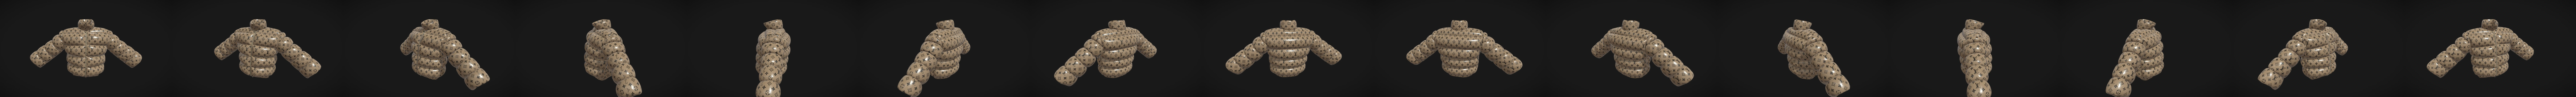 Louis Vuitton Boyhood Puffer Hoodie | 3D model